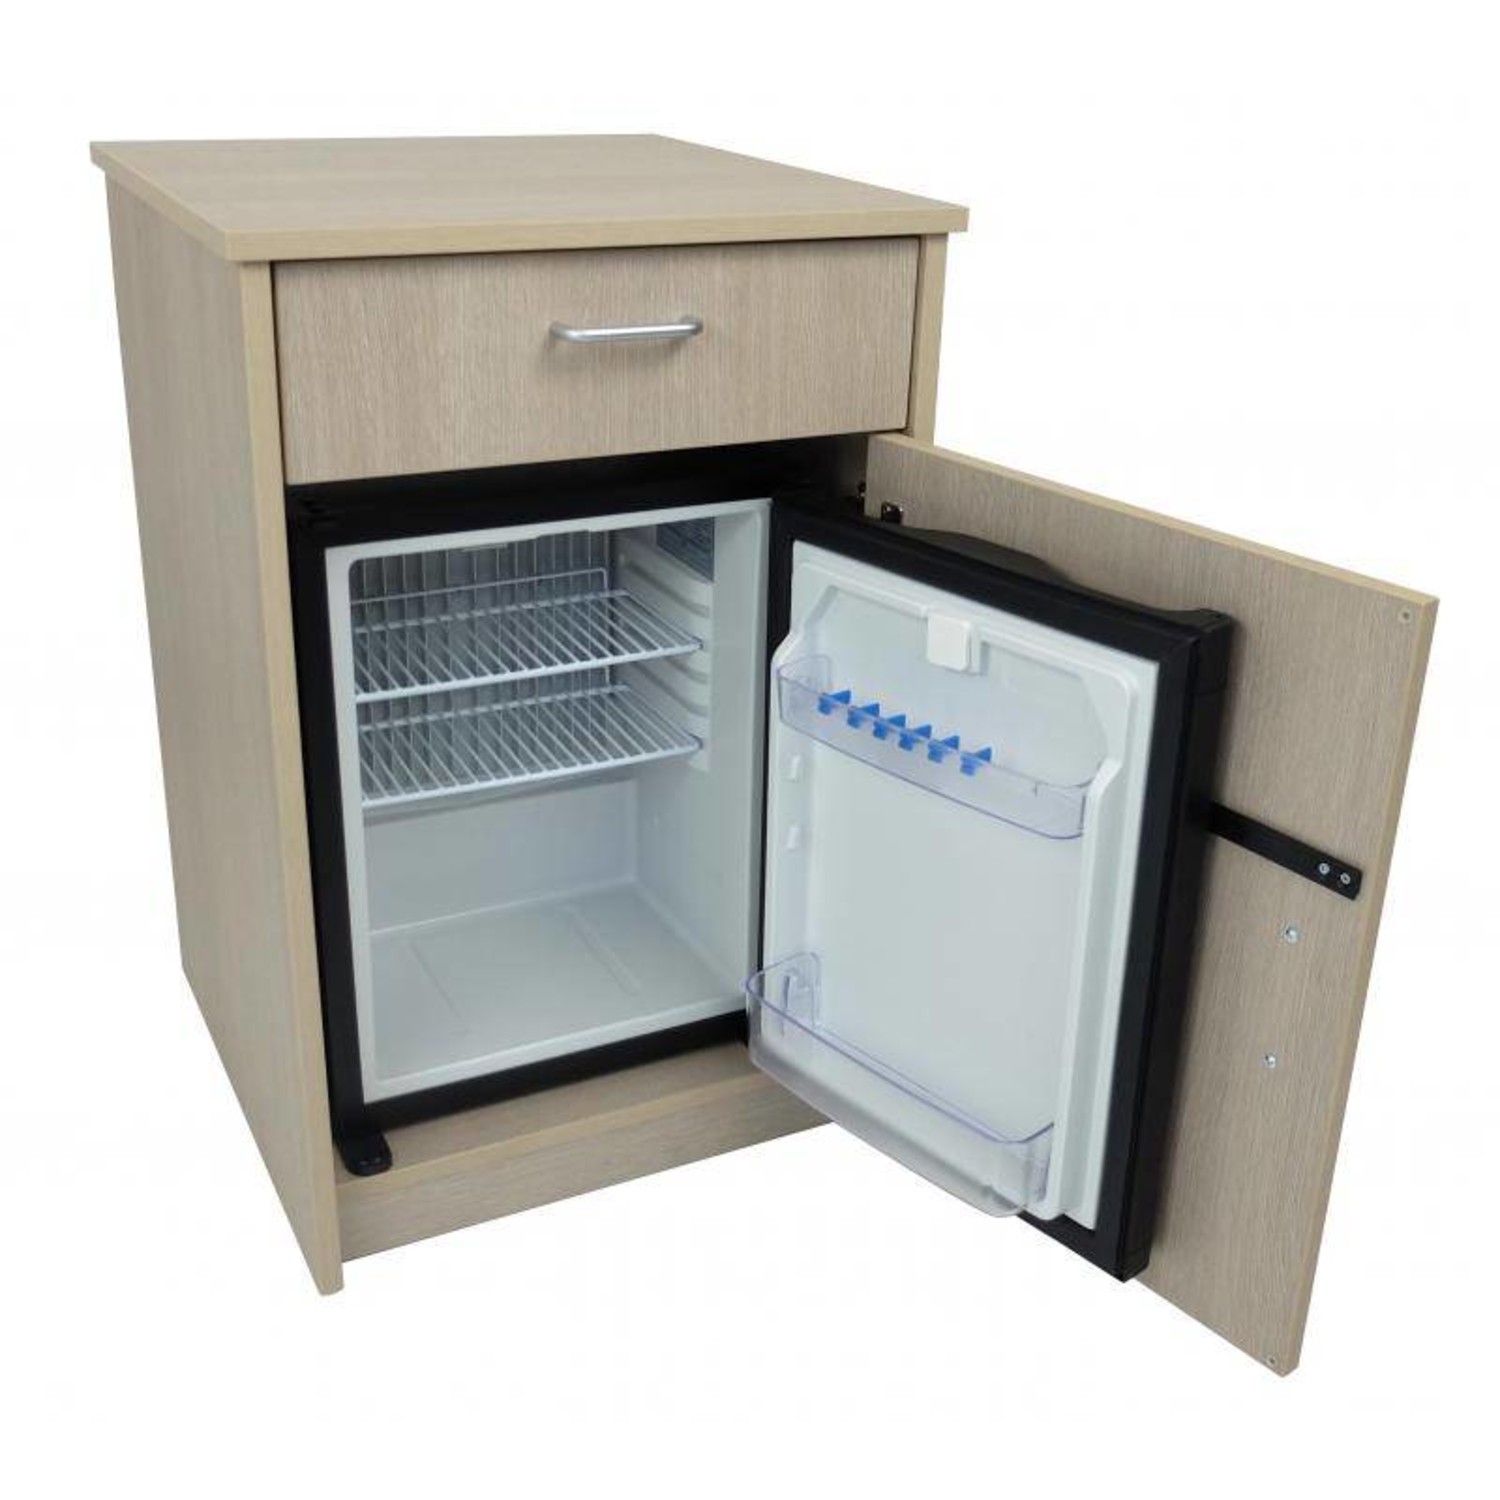 Table de nuit avec réfrigérateur intégré  Livraison Gratuite - Soins à  Domicile Webshop